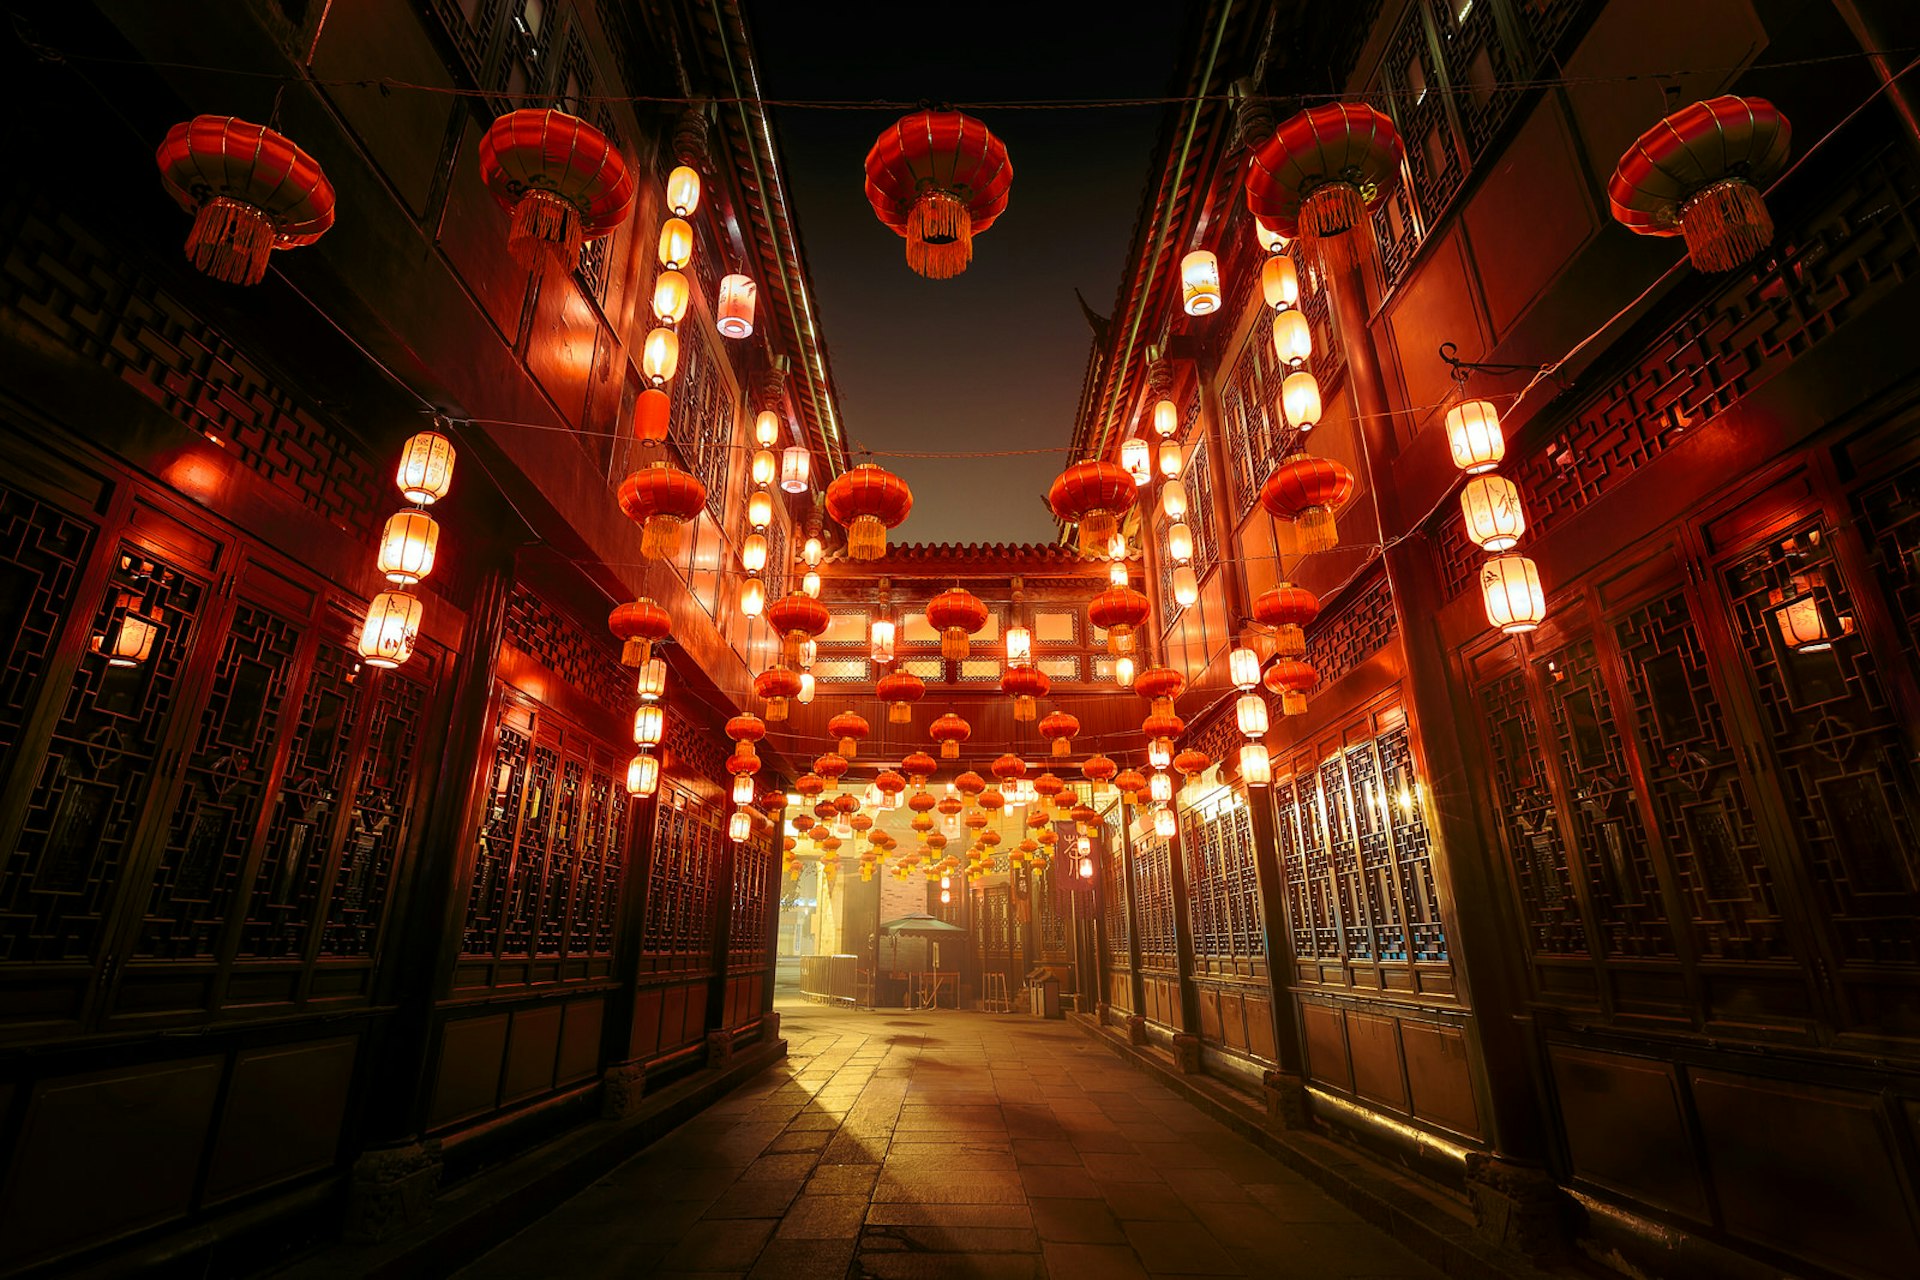 Jinli Ancient Street in Chengdu lit up for the Lantern Festival © kiszon pascal / Getty